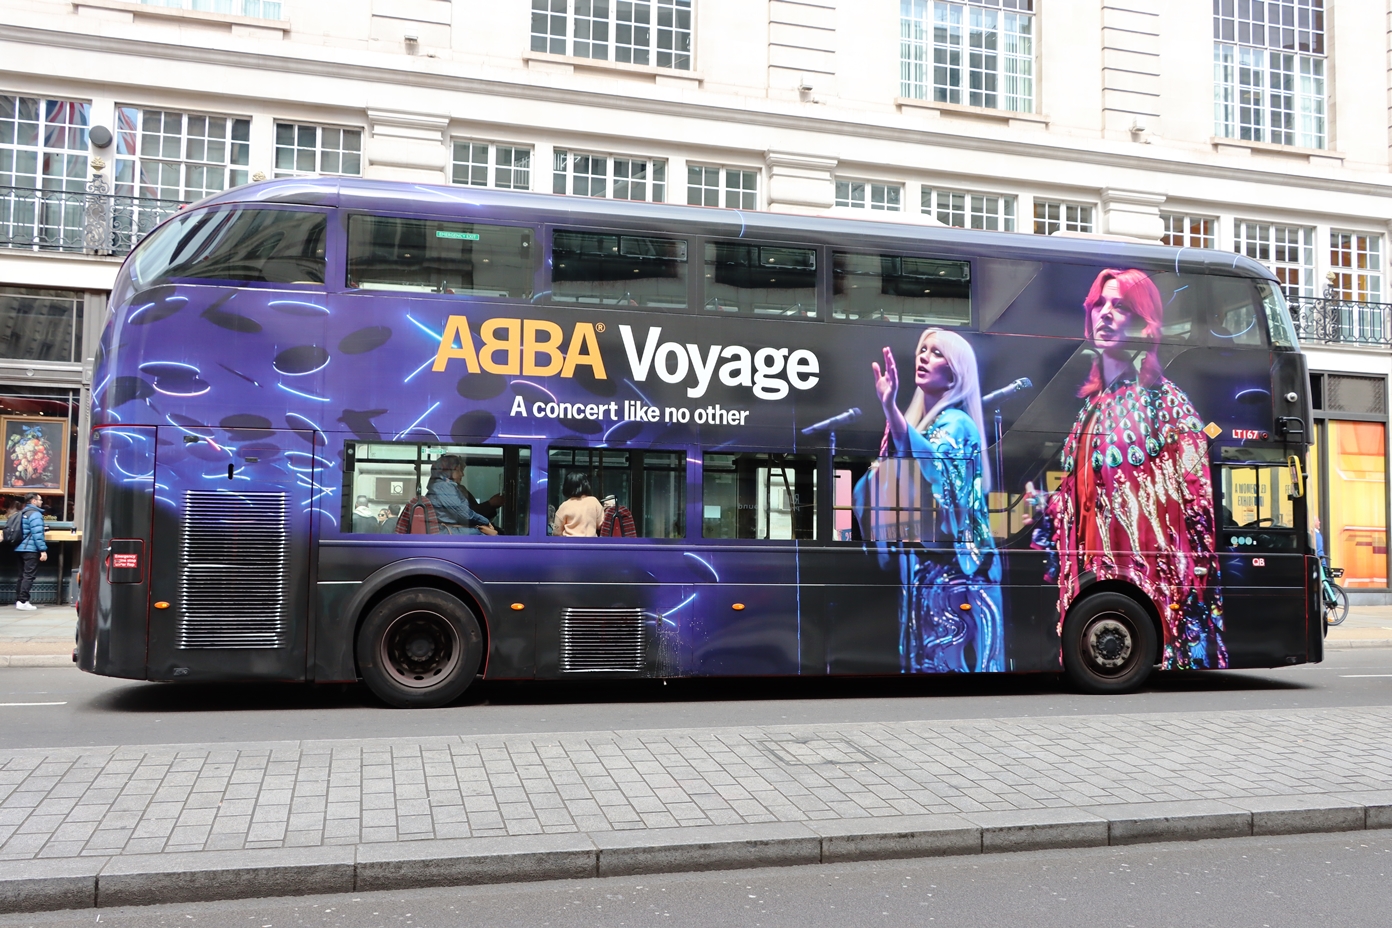 אוטובוס פרסומת למופע של להקת אבבא בלונדון. גם הם בחגיגות (צילום: SHUTTERSTOCK)